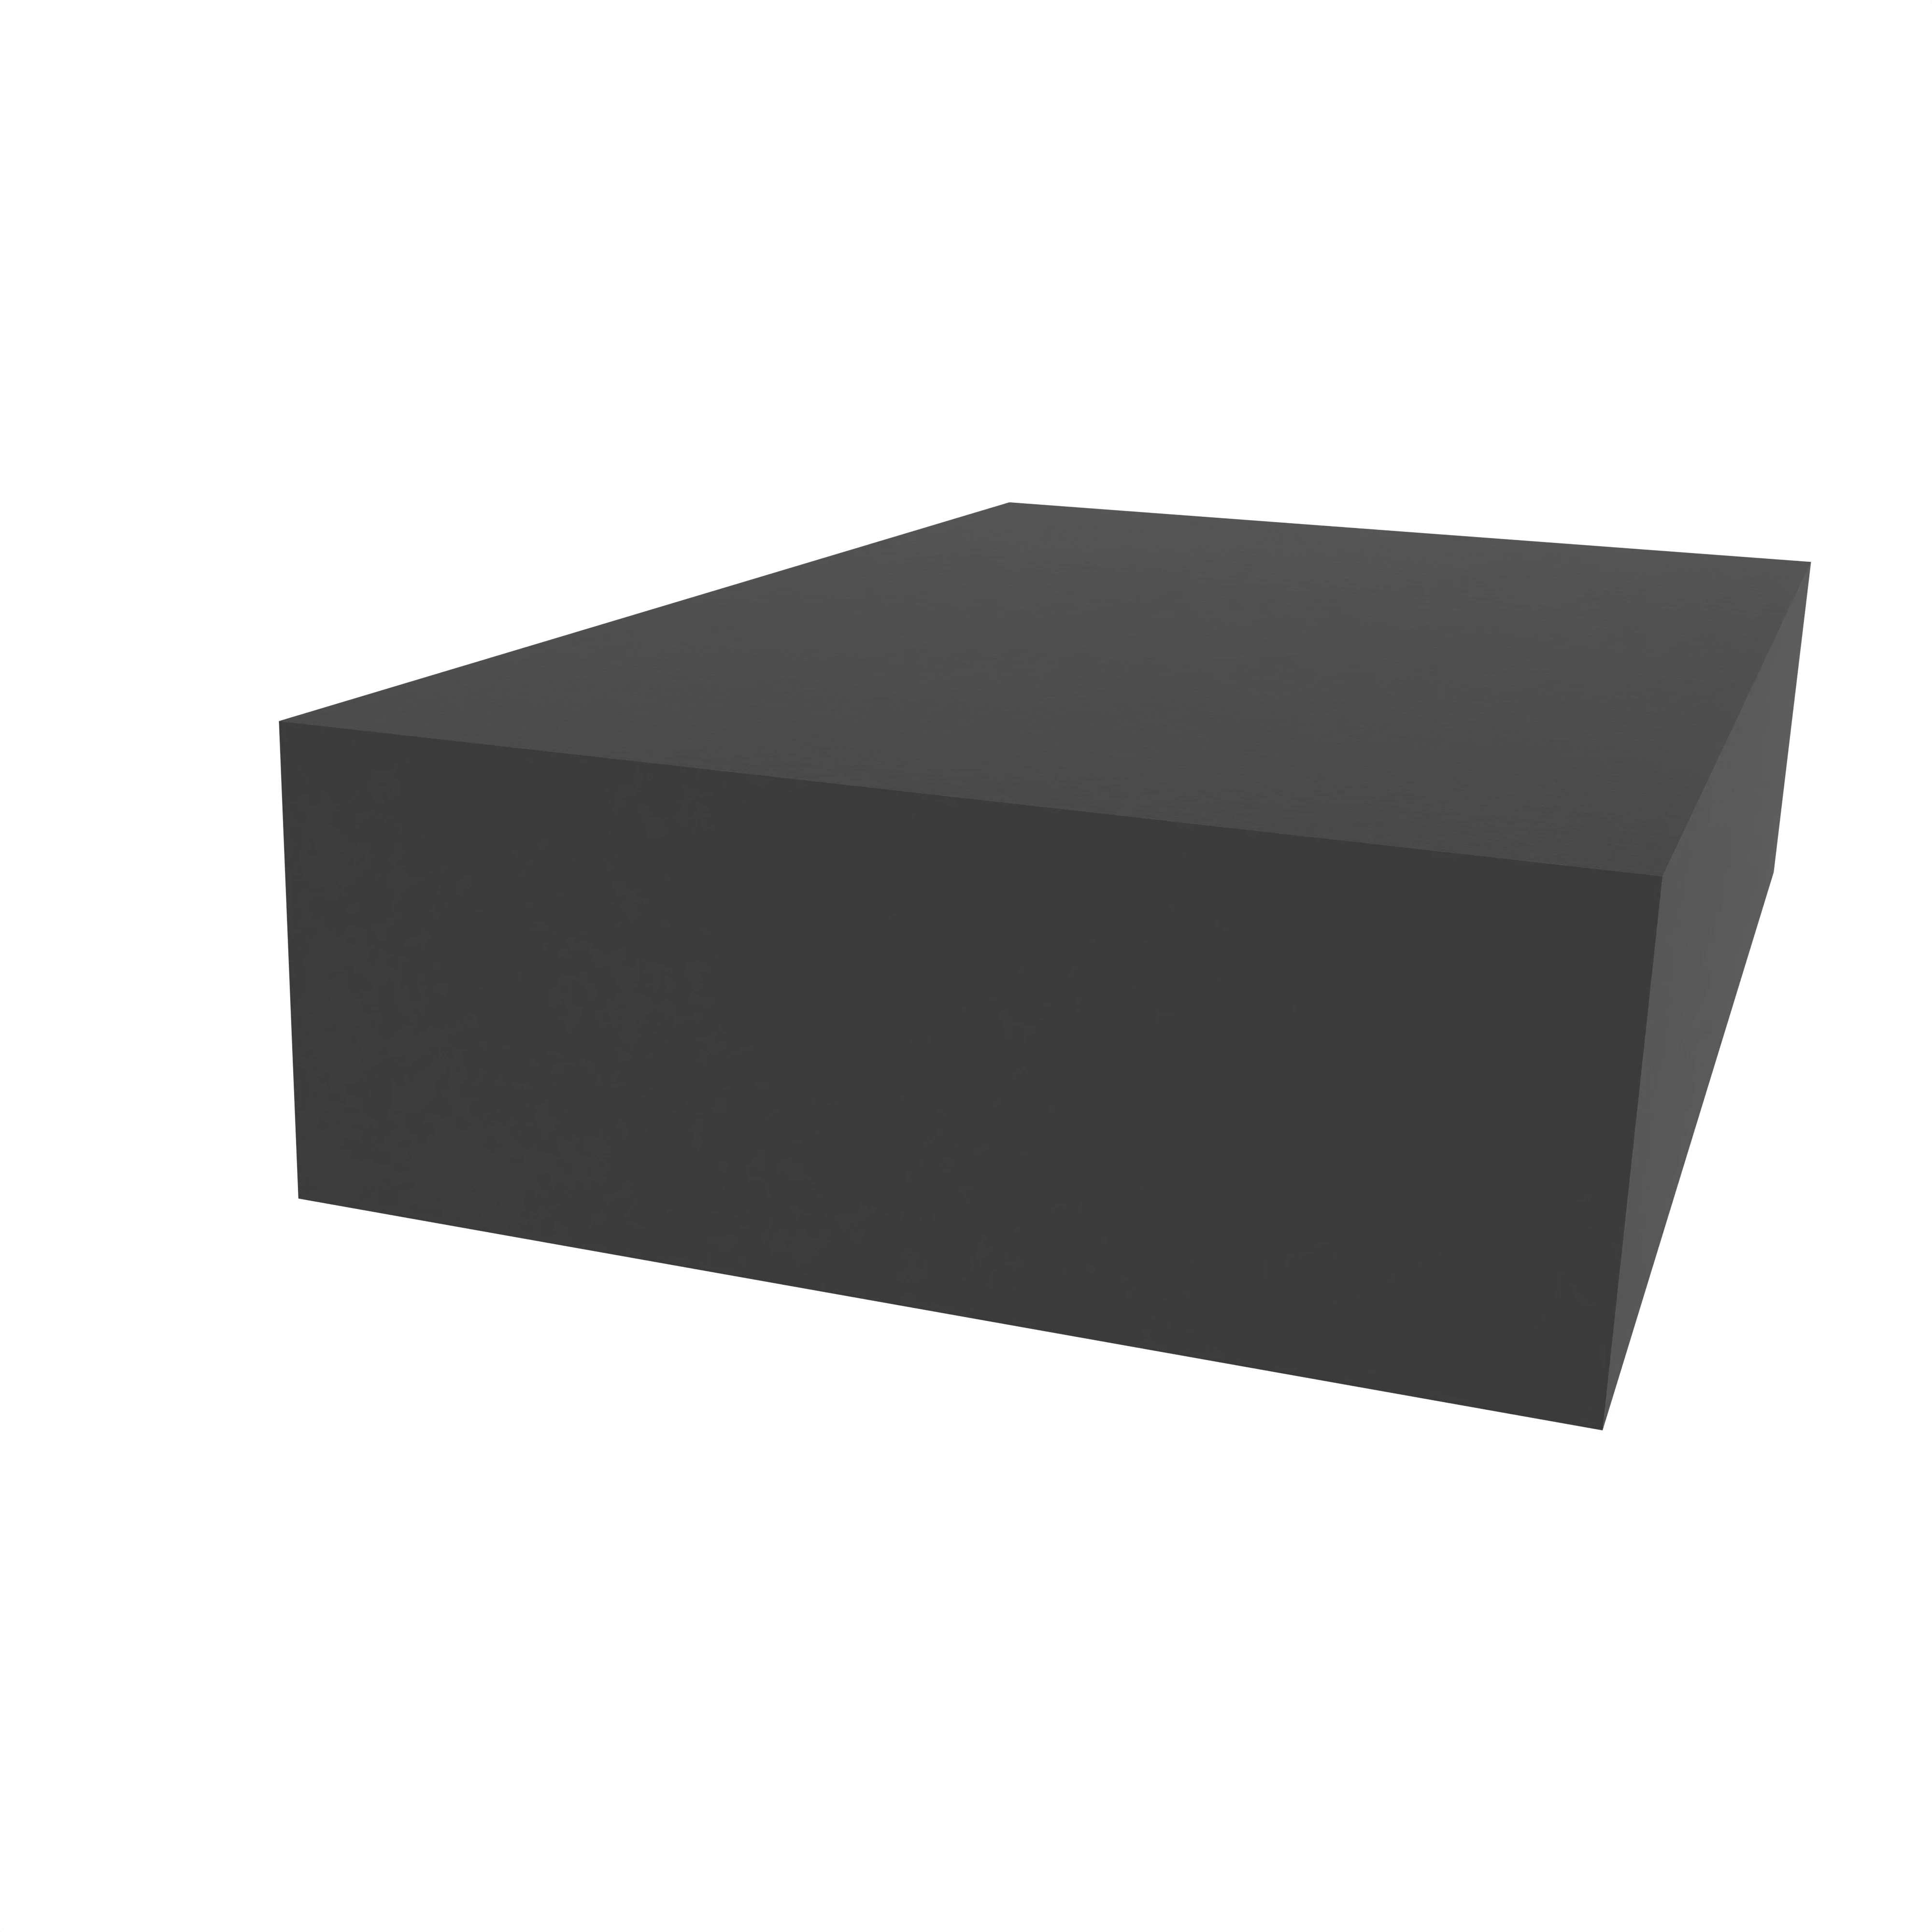 Moosgummidichtung vierkant | 40 mm Breite | Farbe: schwarz